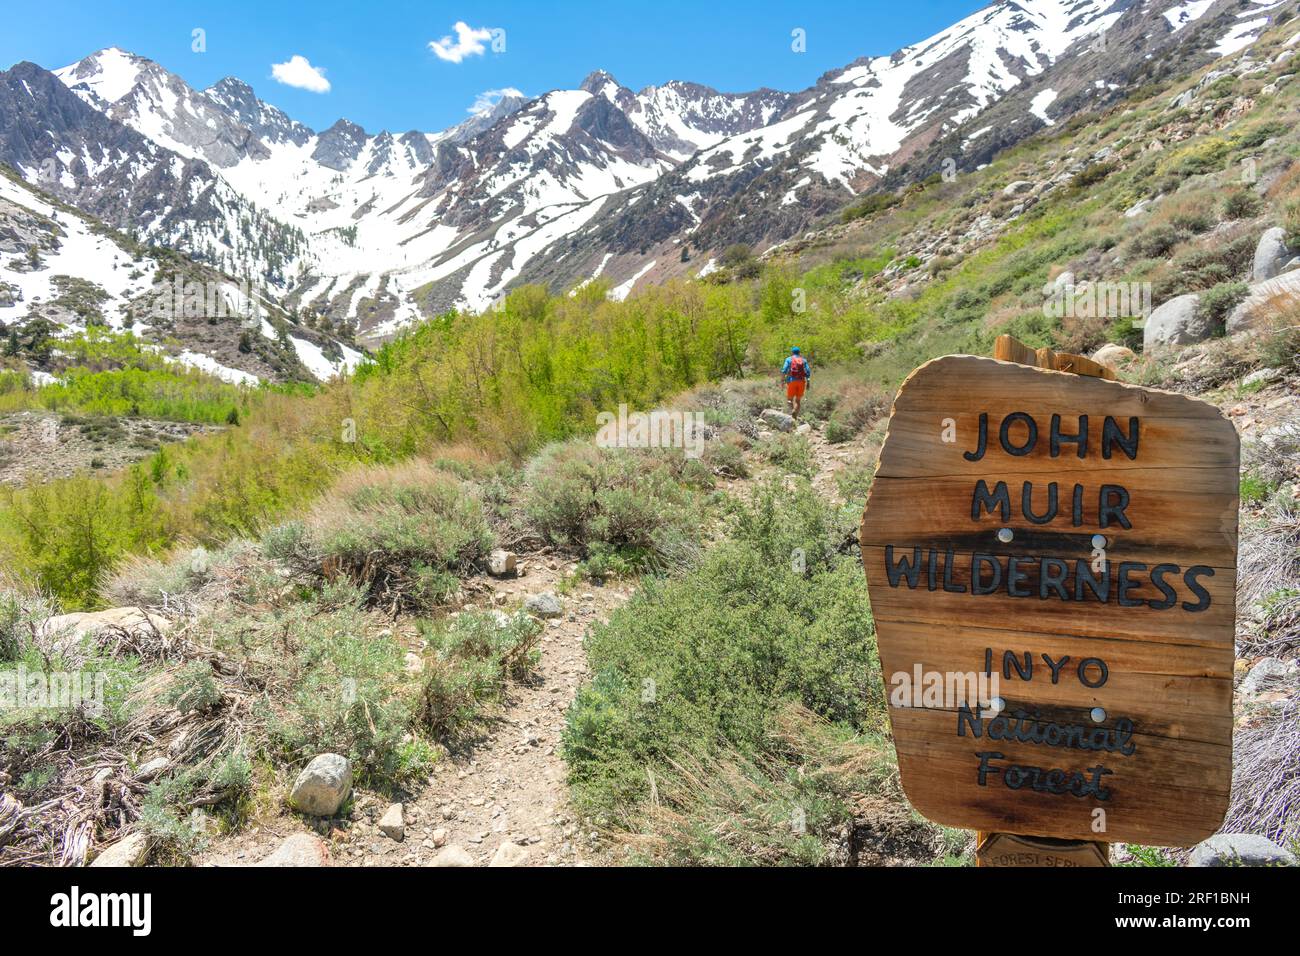 Auf der Reise durch die John Muir Wilderness erkundet ein Wanderer den ruhigen McGee Creek Trail, der von der Pracht der High Sierras umgeben ist. Stockfoto